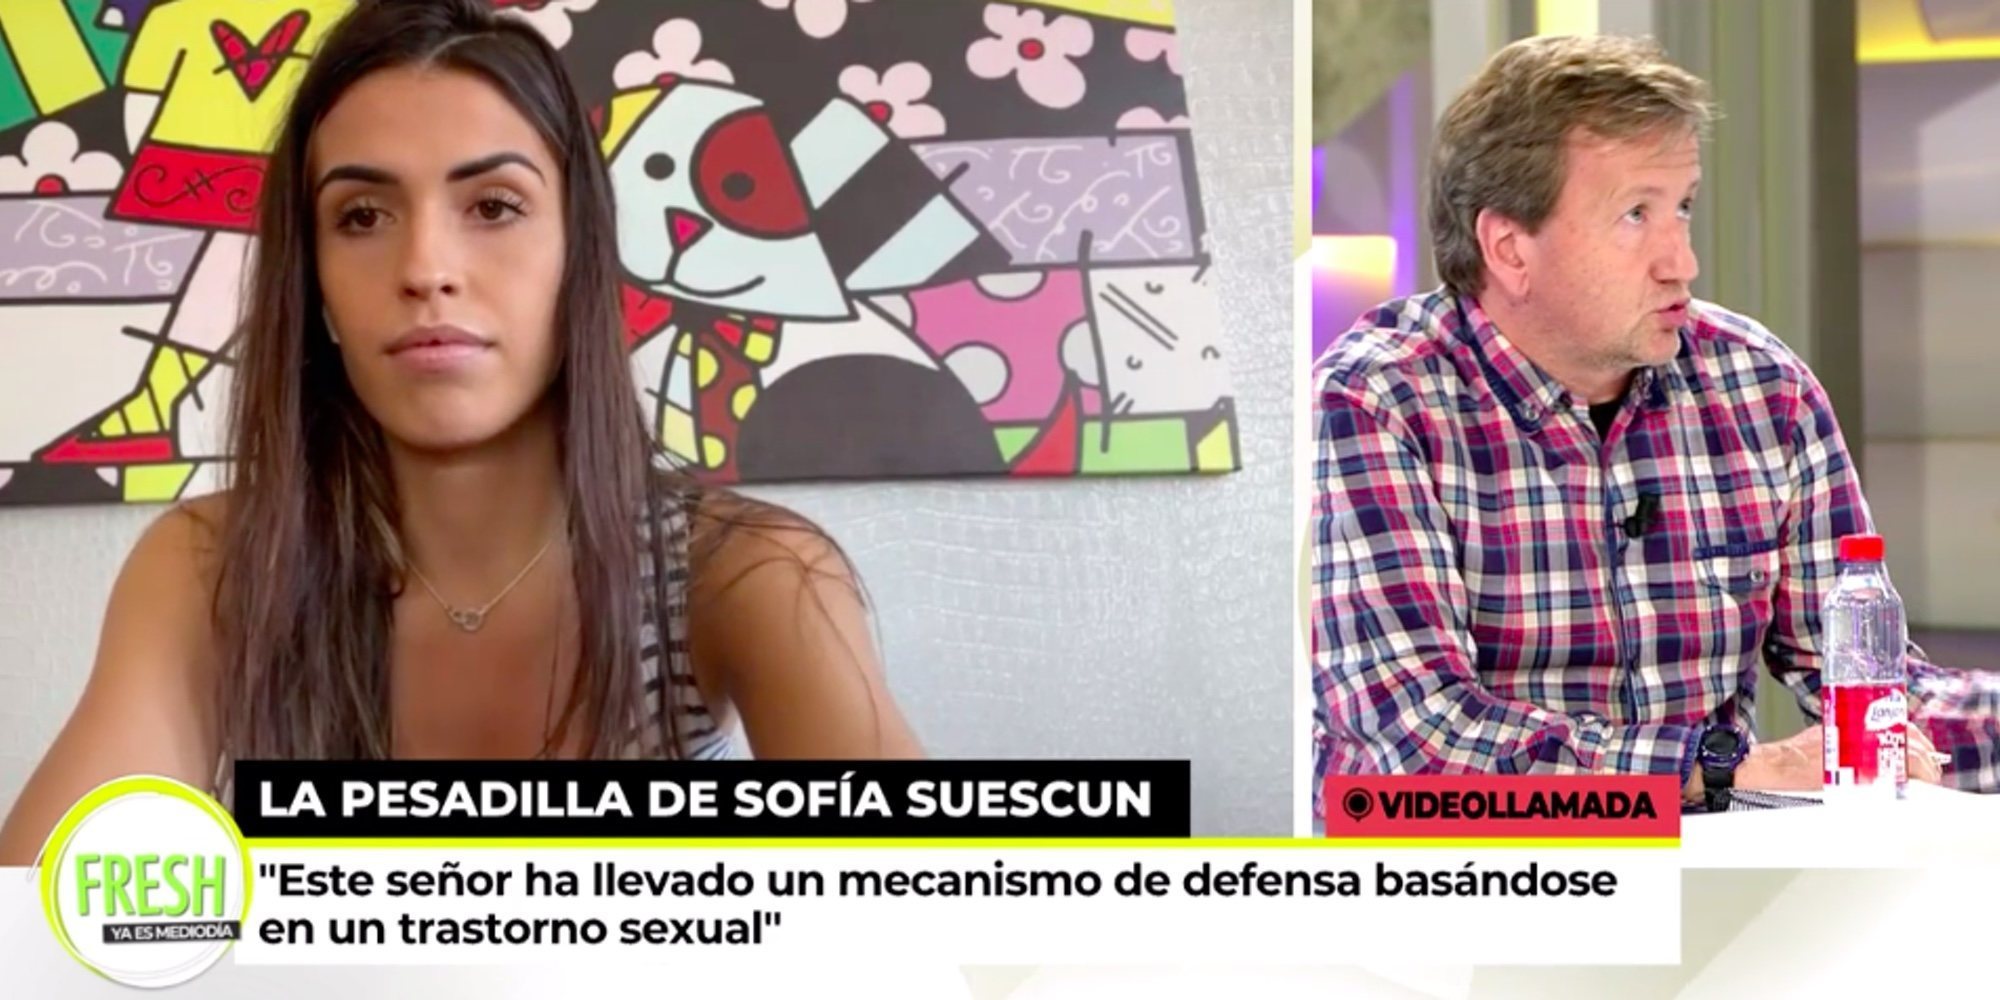 Sofía Suescun cuenta su experiencia como víctima de acoso sexual: "Estoy muy enfadada, no se ha hecho justicia"